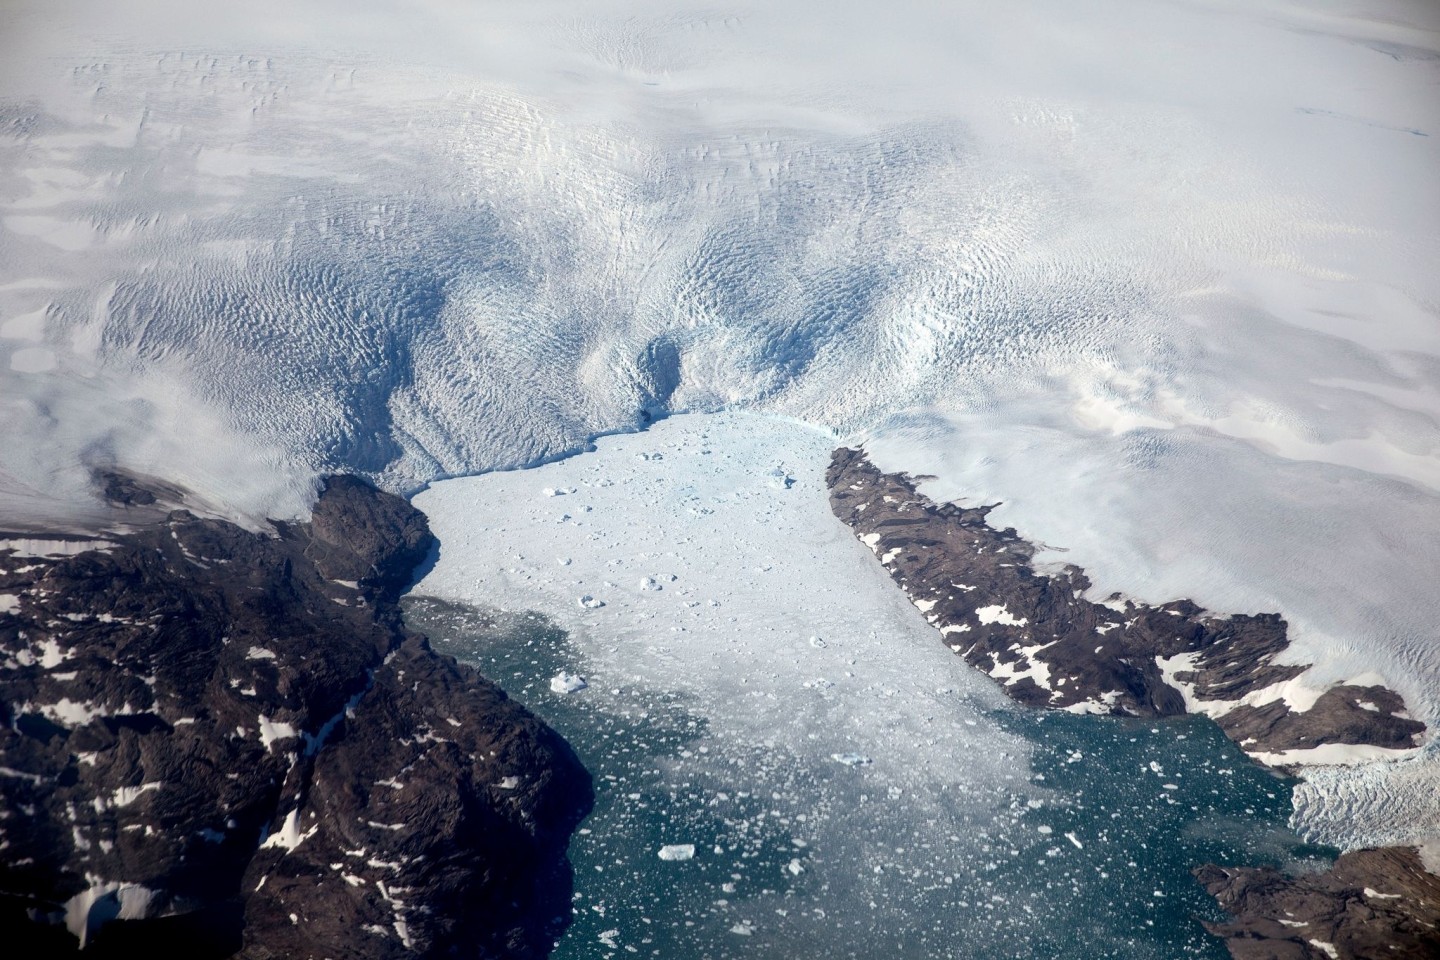 Eisberge brechen von einem Gletscher in einen Fjord in Grönland. Schmelzen die Gletscher und Eisflächen etwa in Grönland, steigen die Meeresspiegel.